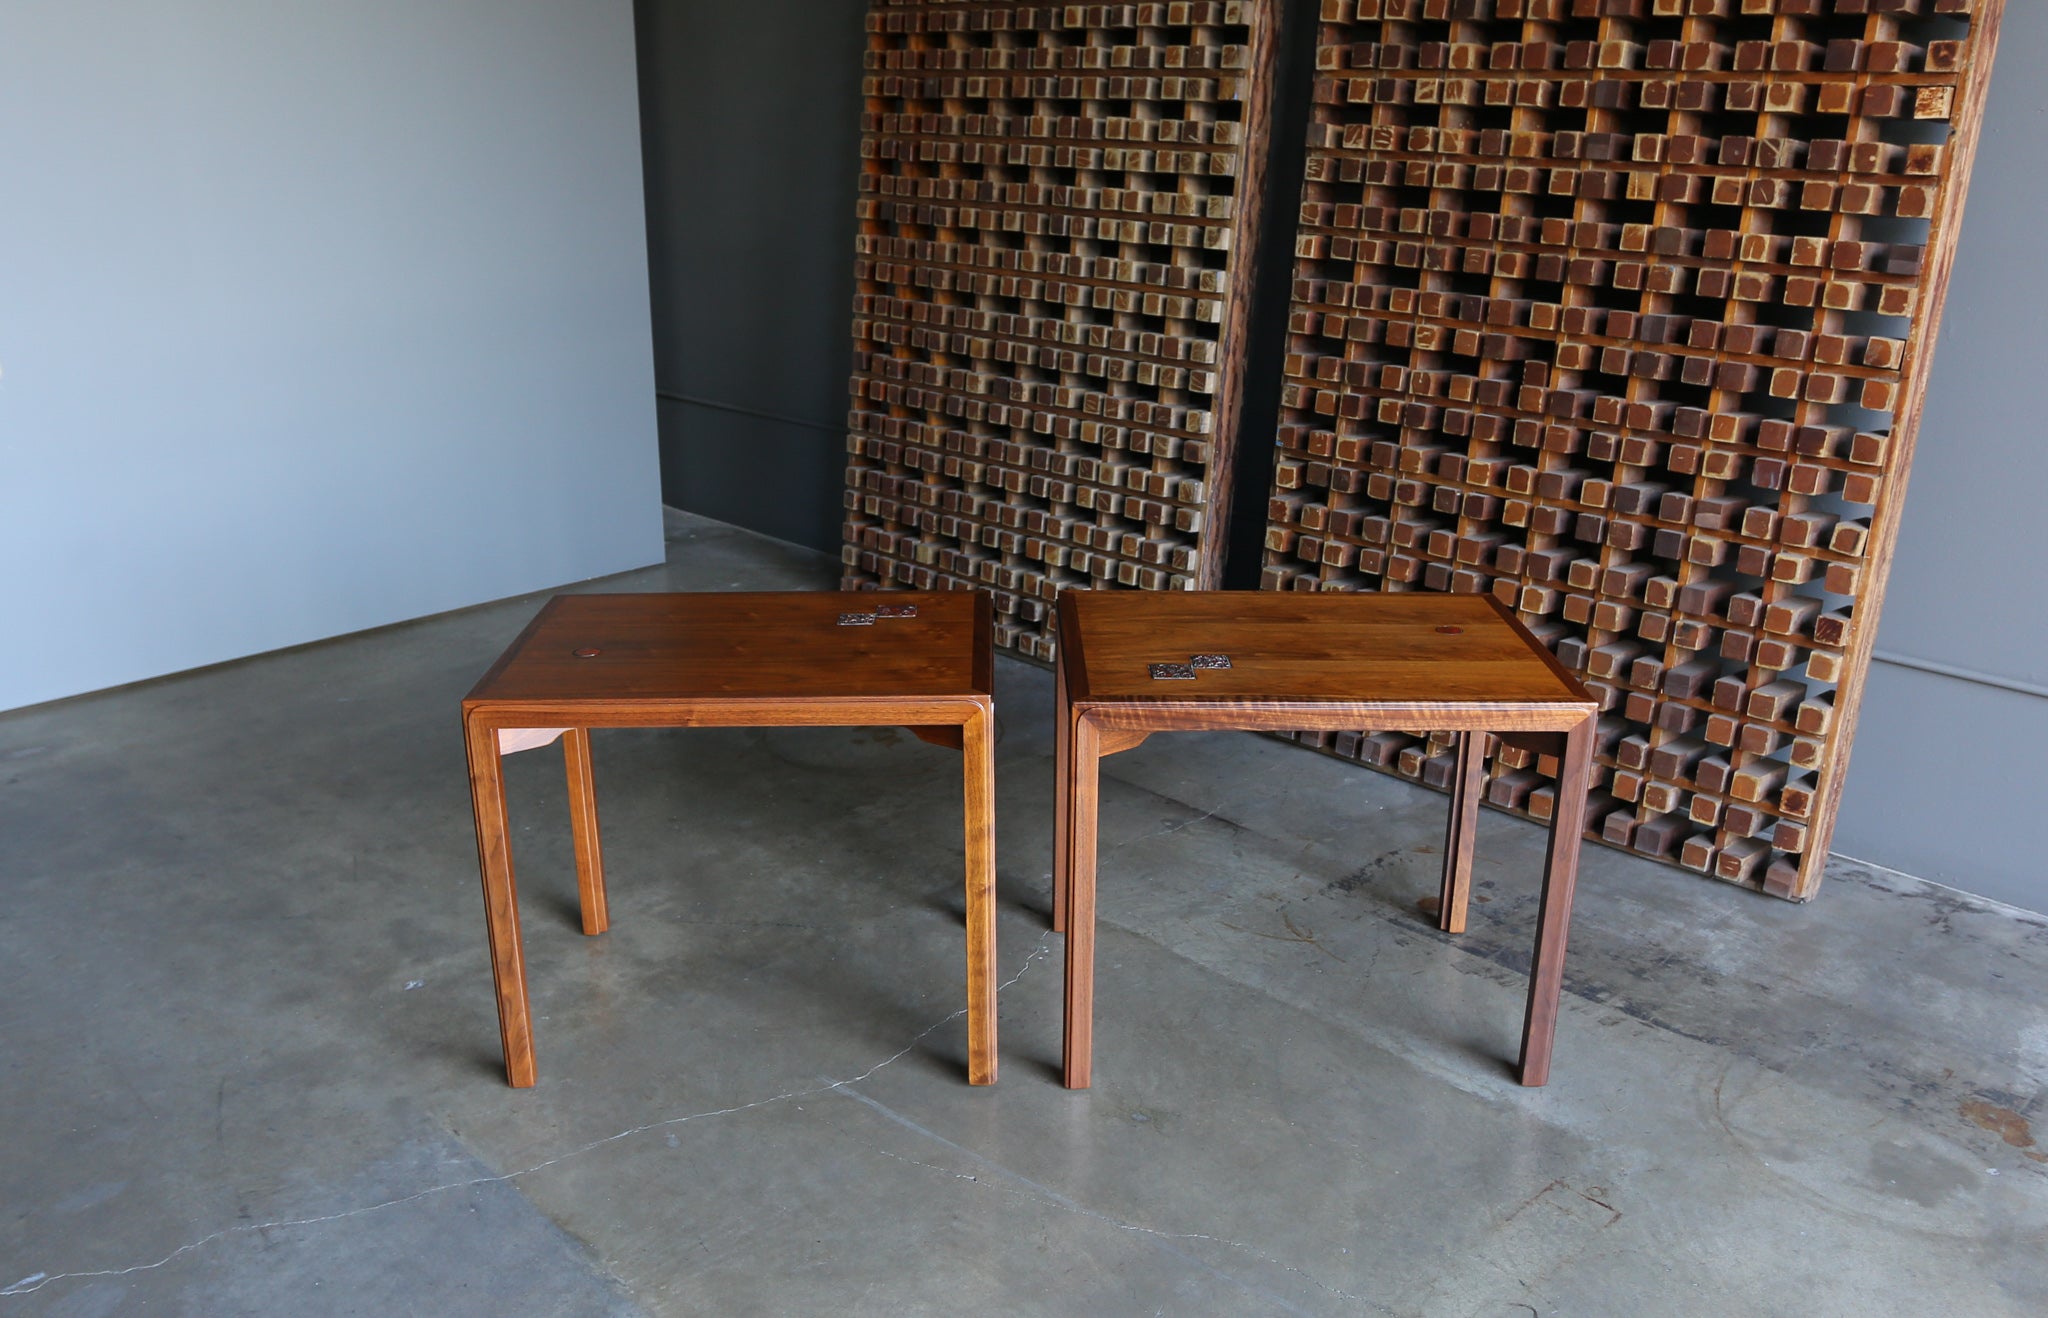 = SOLD = Edward Wormley Side Tables for Dunbar with Natzler Tiles, circa 1955